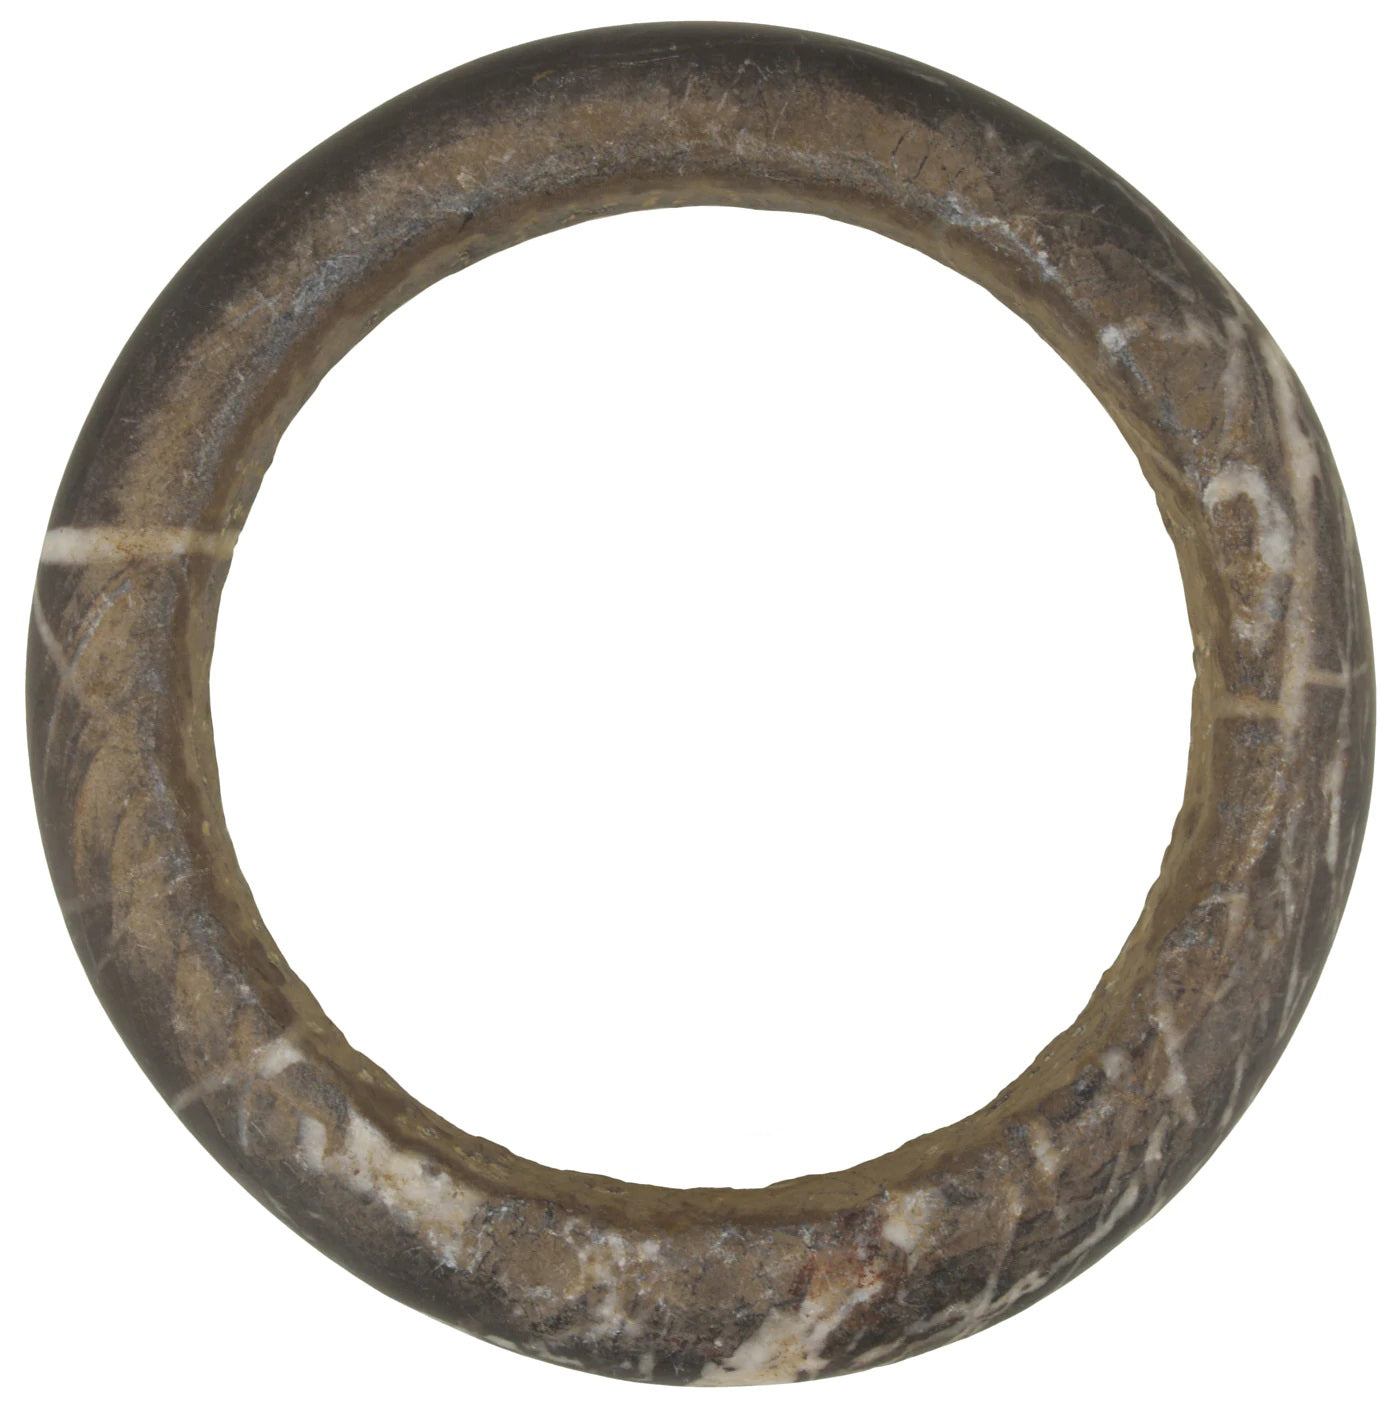 Старинный браслет из гранита из западноафриканского камня. Повязка на руку. Валюта Мали Догон Сахара - Tribalgh